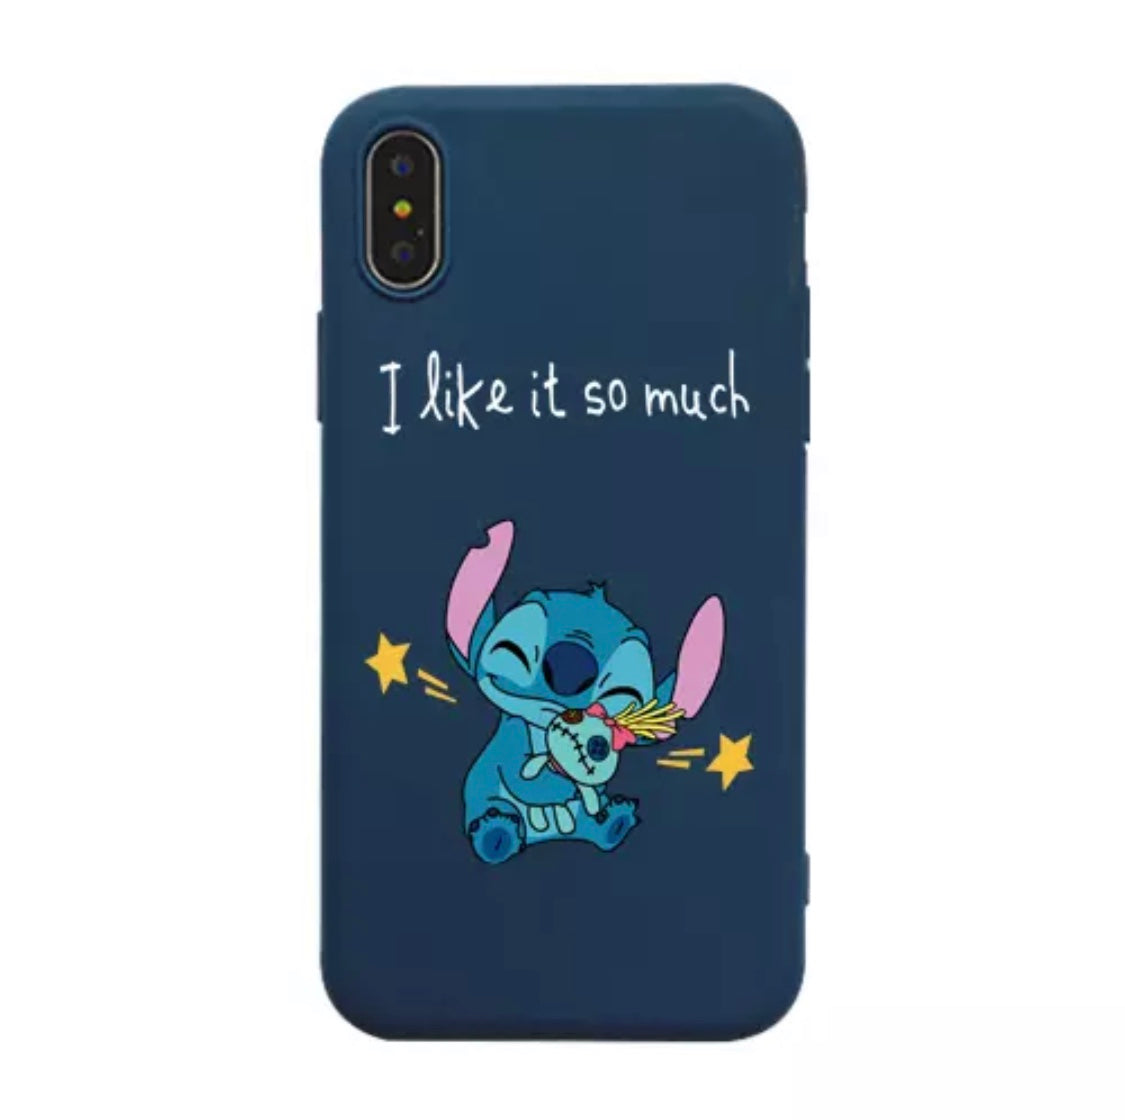 DDLGVERSE Stitch Slogan iPhone Case Blue